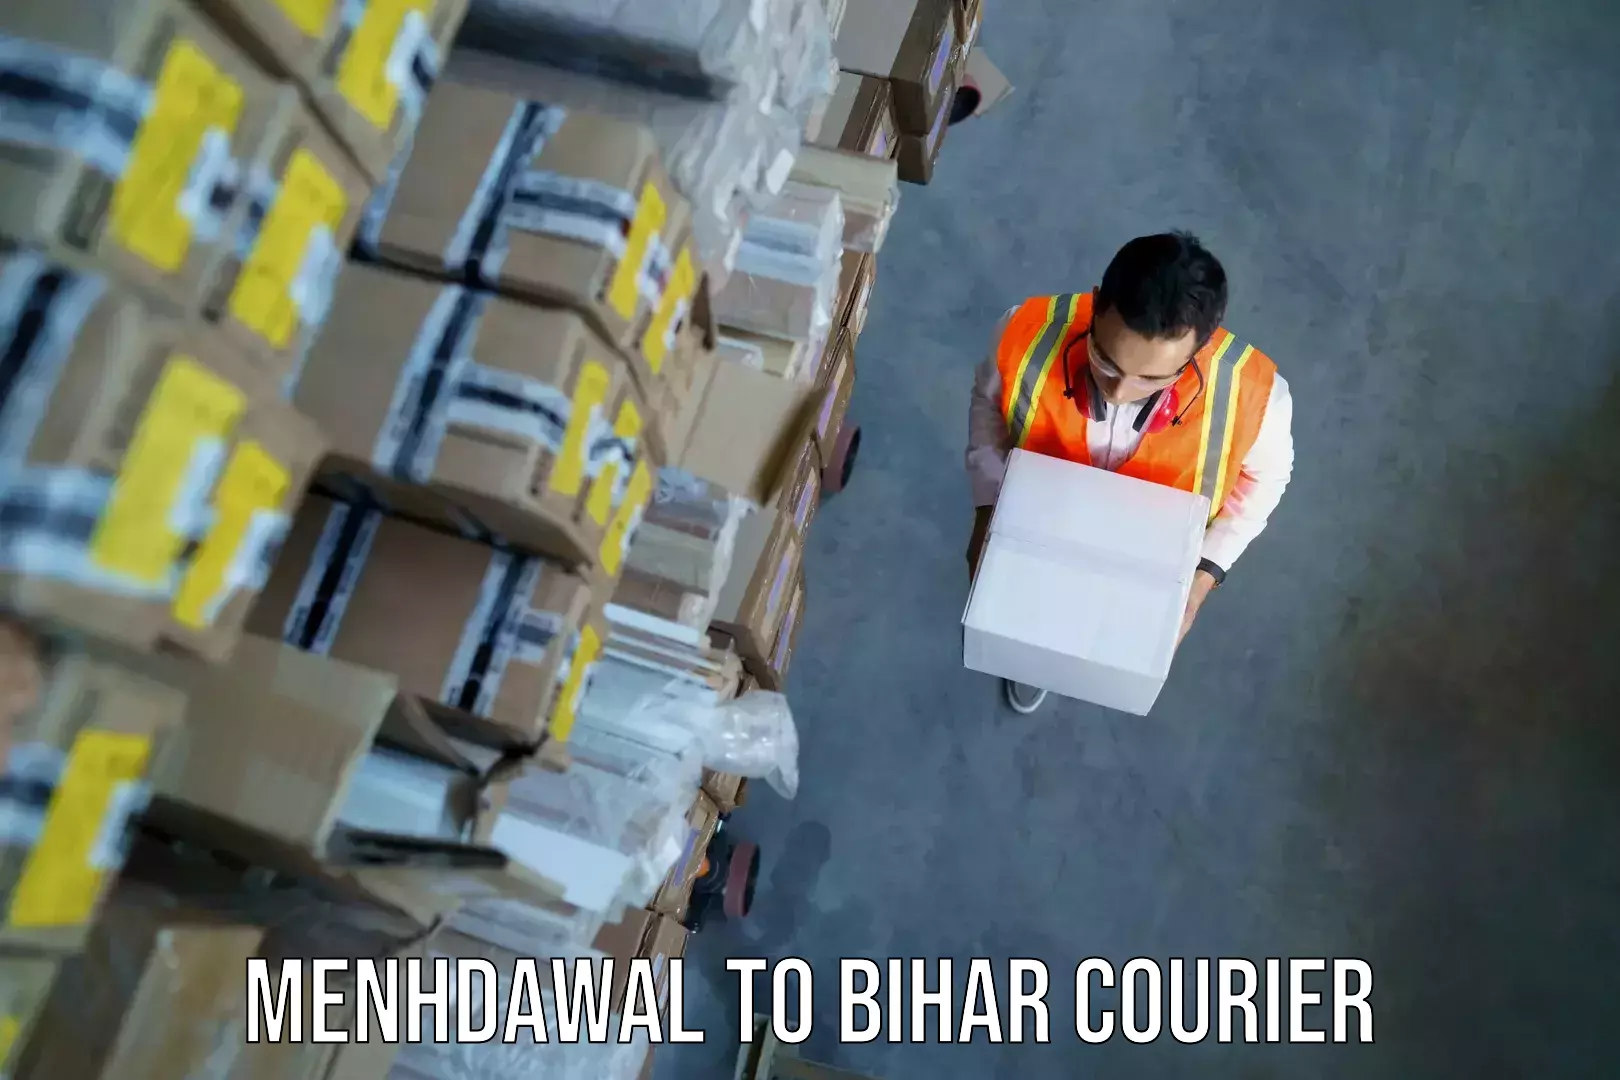 Baggage transport estimate Menhdawal to Bihar